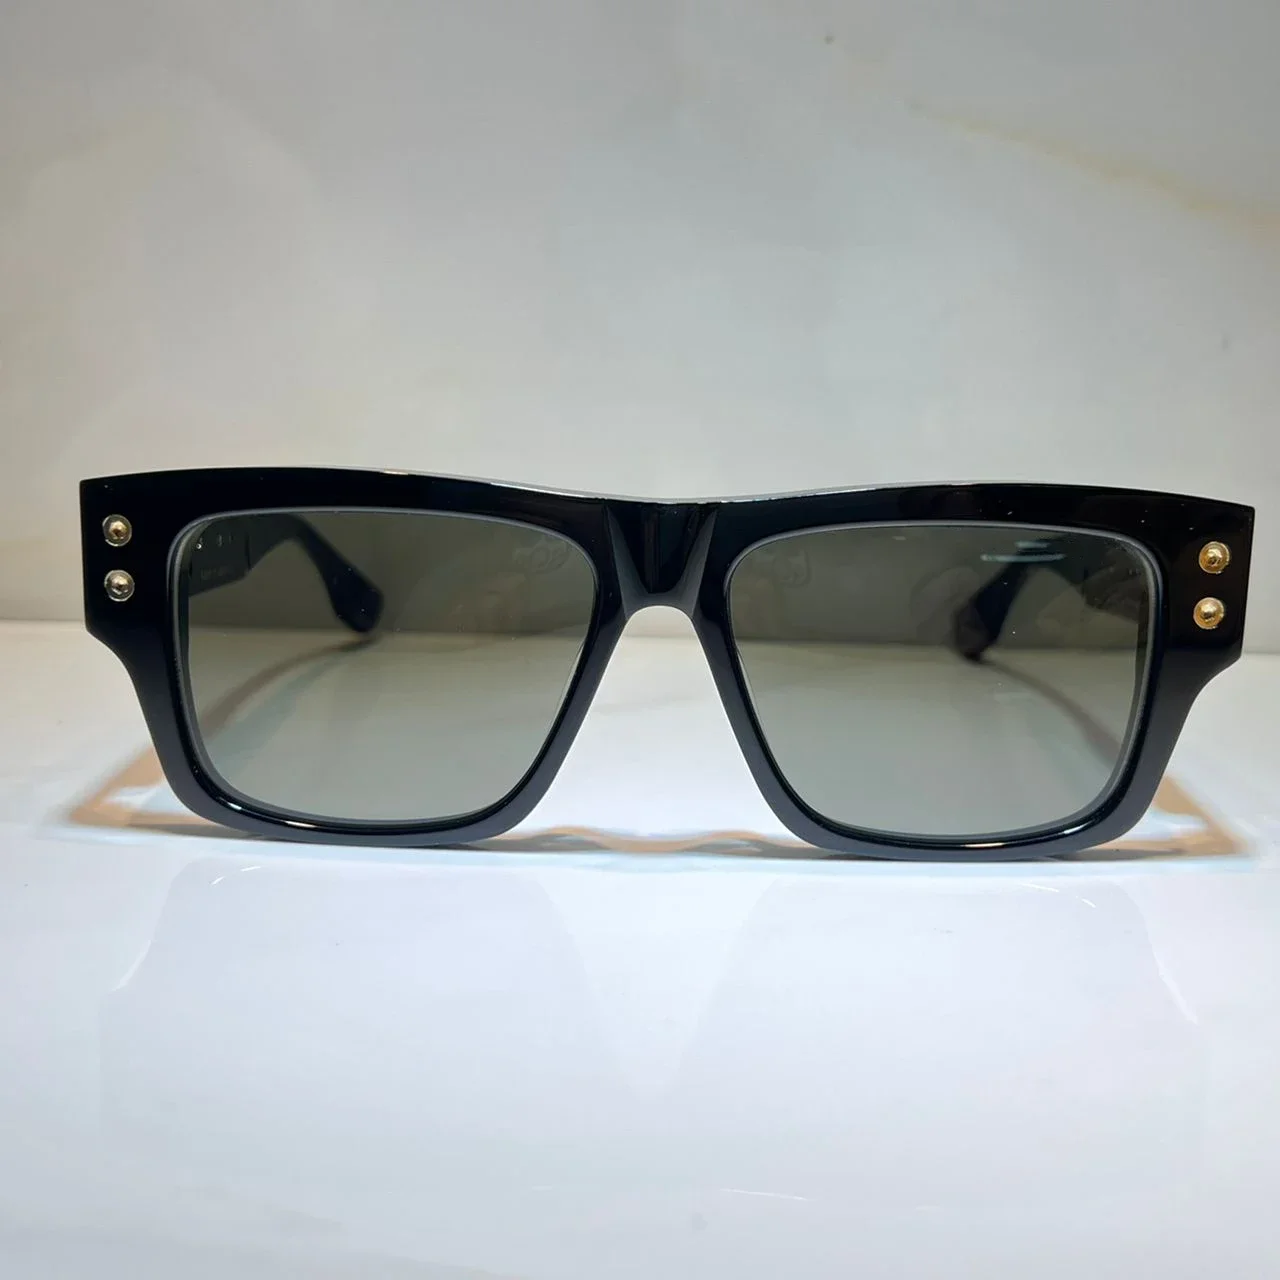 Sunglasses For Women and Men Summer SEVEN 407 Brand Style Anti-Ultraviolet Retro Plate Full Frame Glasses Random Box